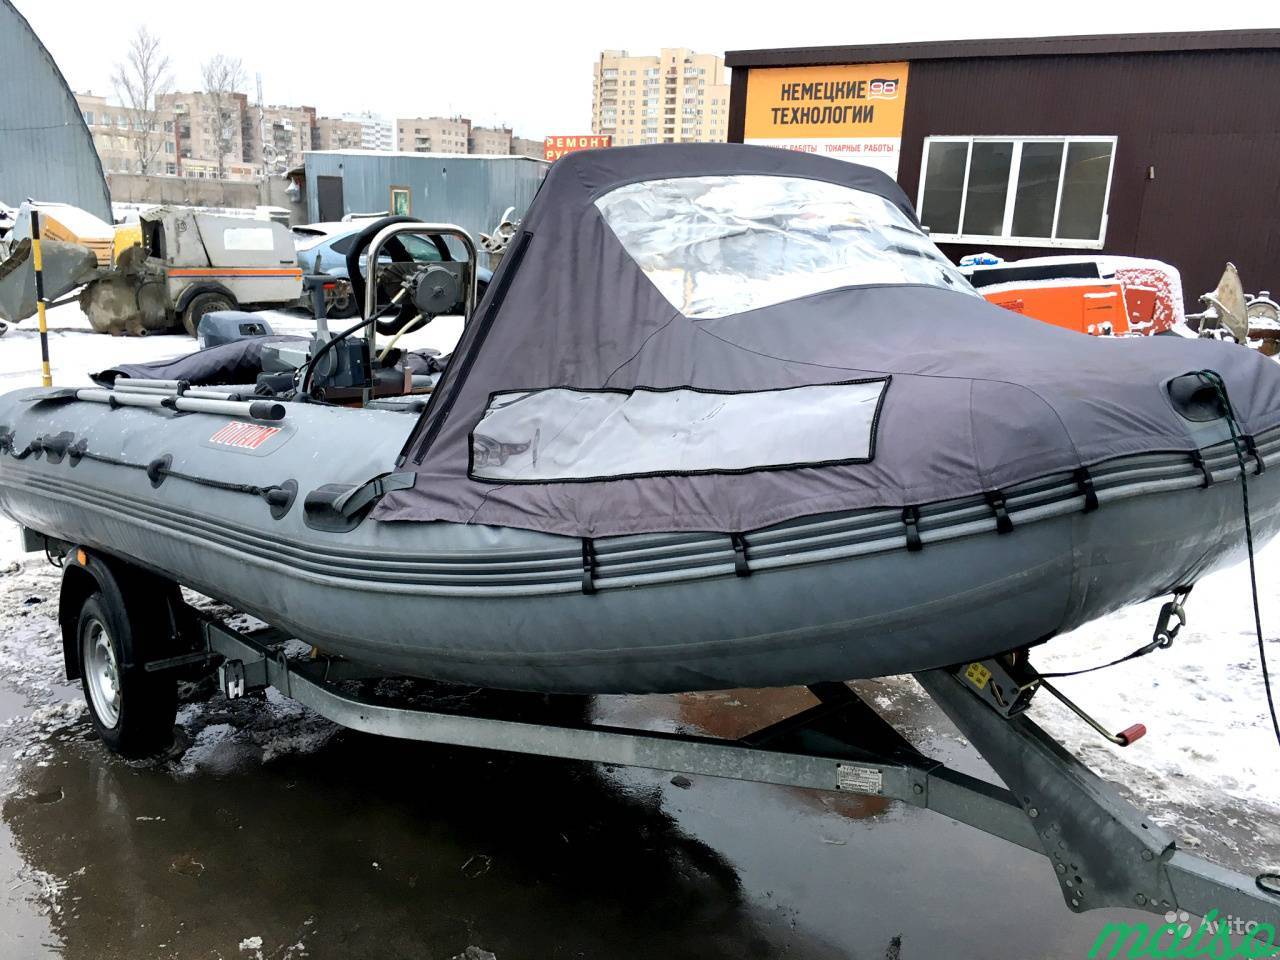 Моторная лодка Посейдон titan с оборудованием в Санкт-Петербурге. Фото 1